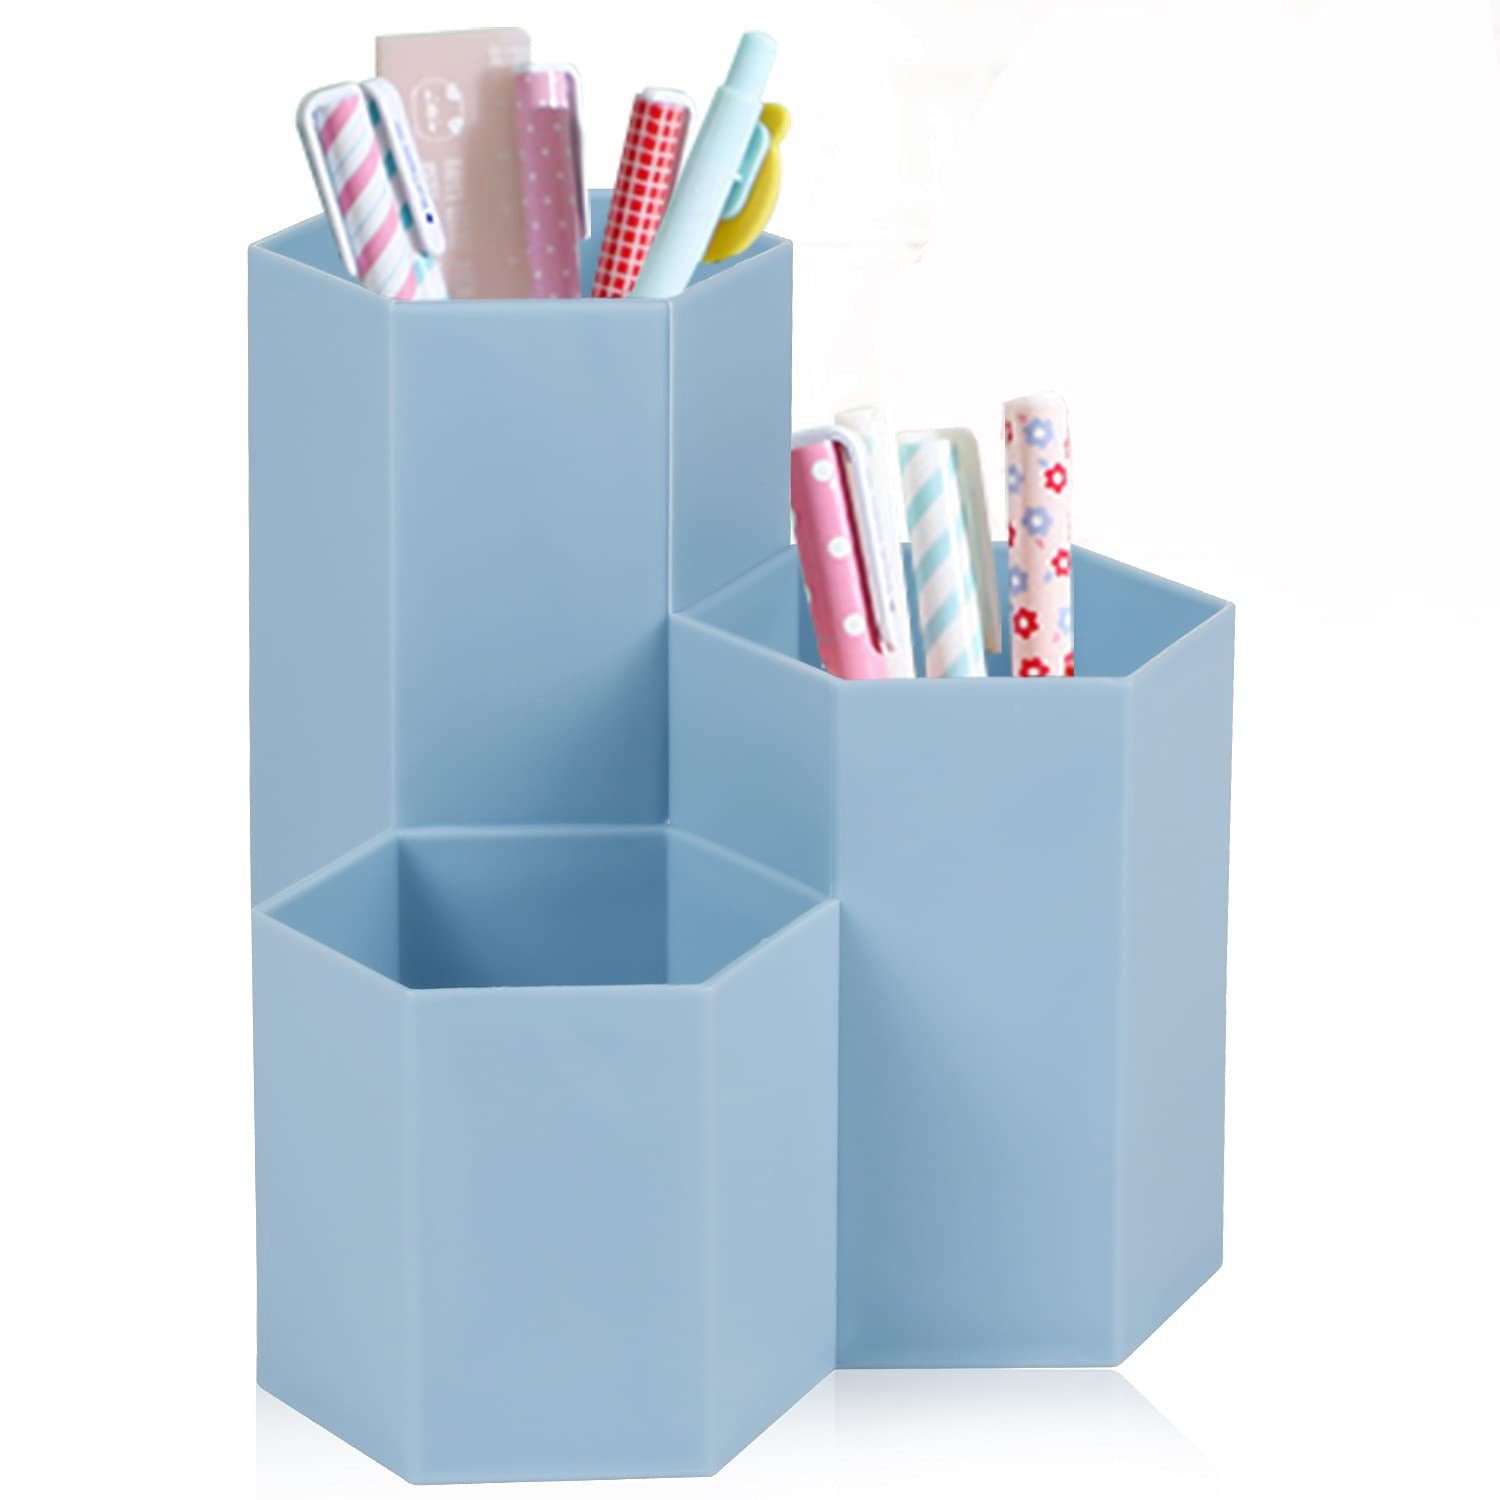 Stiftebox aus Kunststoff,Hexagonal Stifthalter,Stück schreibtisch bleistift aufbewahrungsbox,Schreibwaren Stifthalter Box,Multifunktionaler Stifthalter,Schreibtisch Stifthalter 